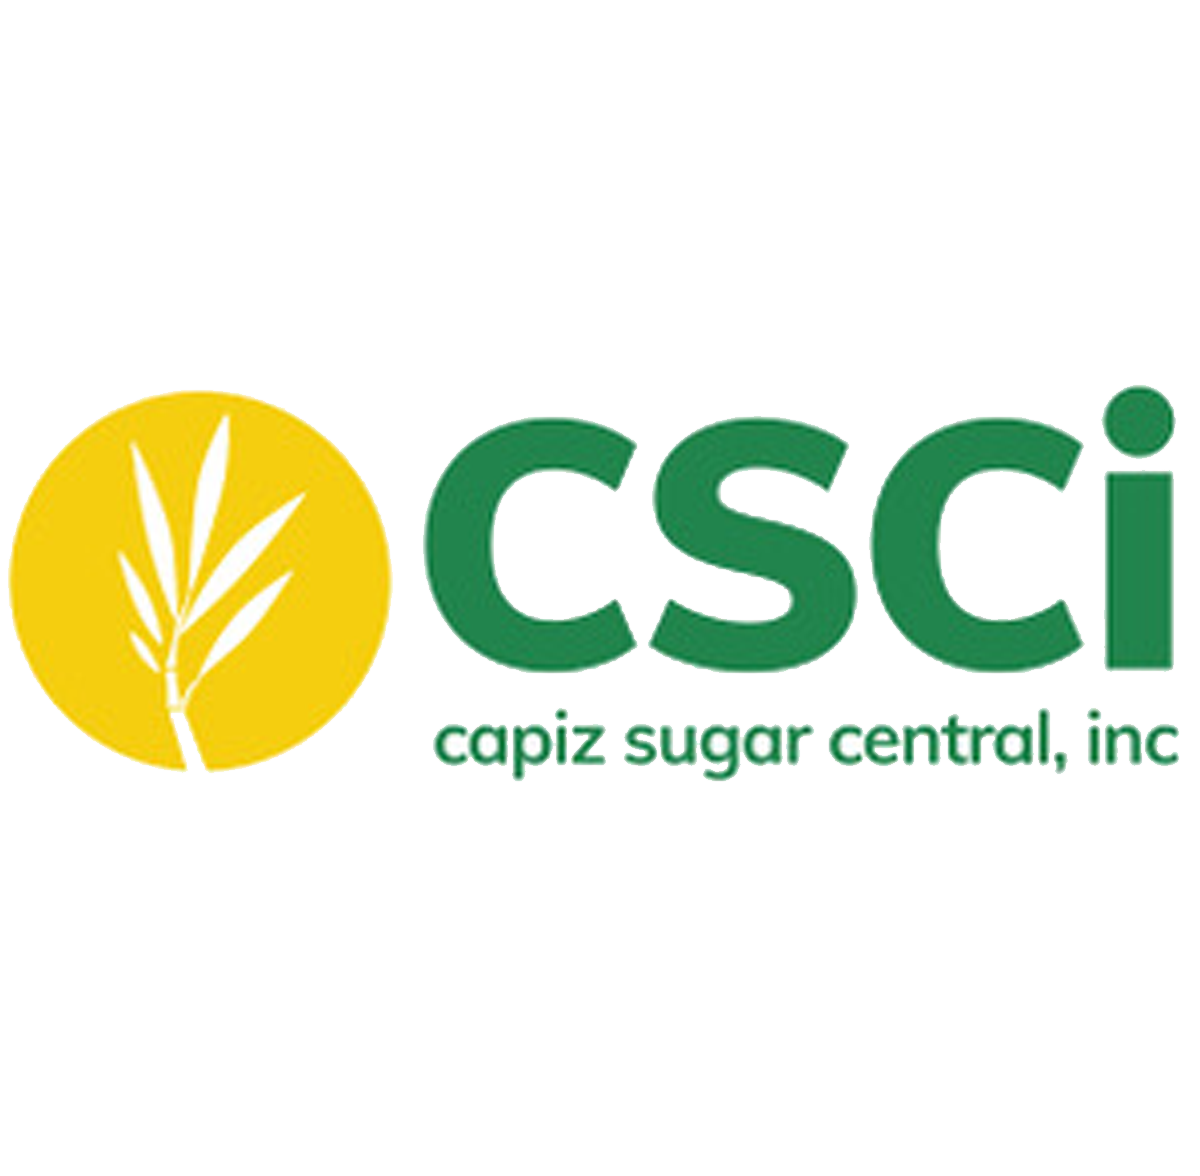 Csci Capiz Sugar Central, Inc.